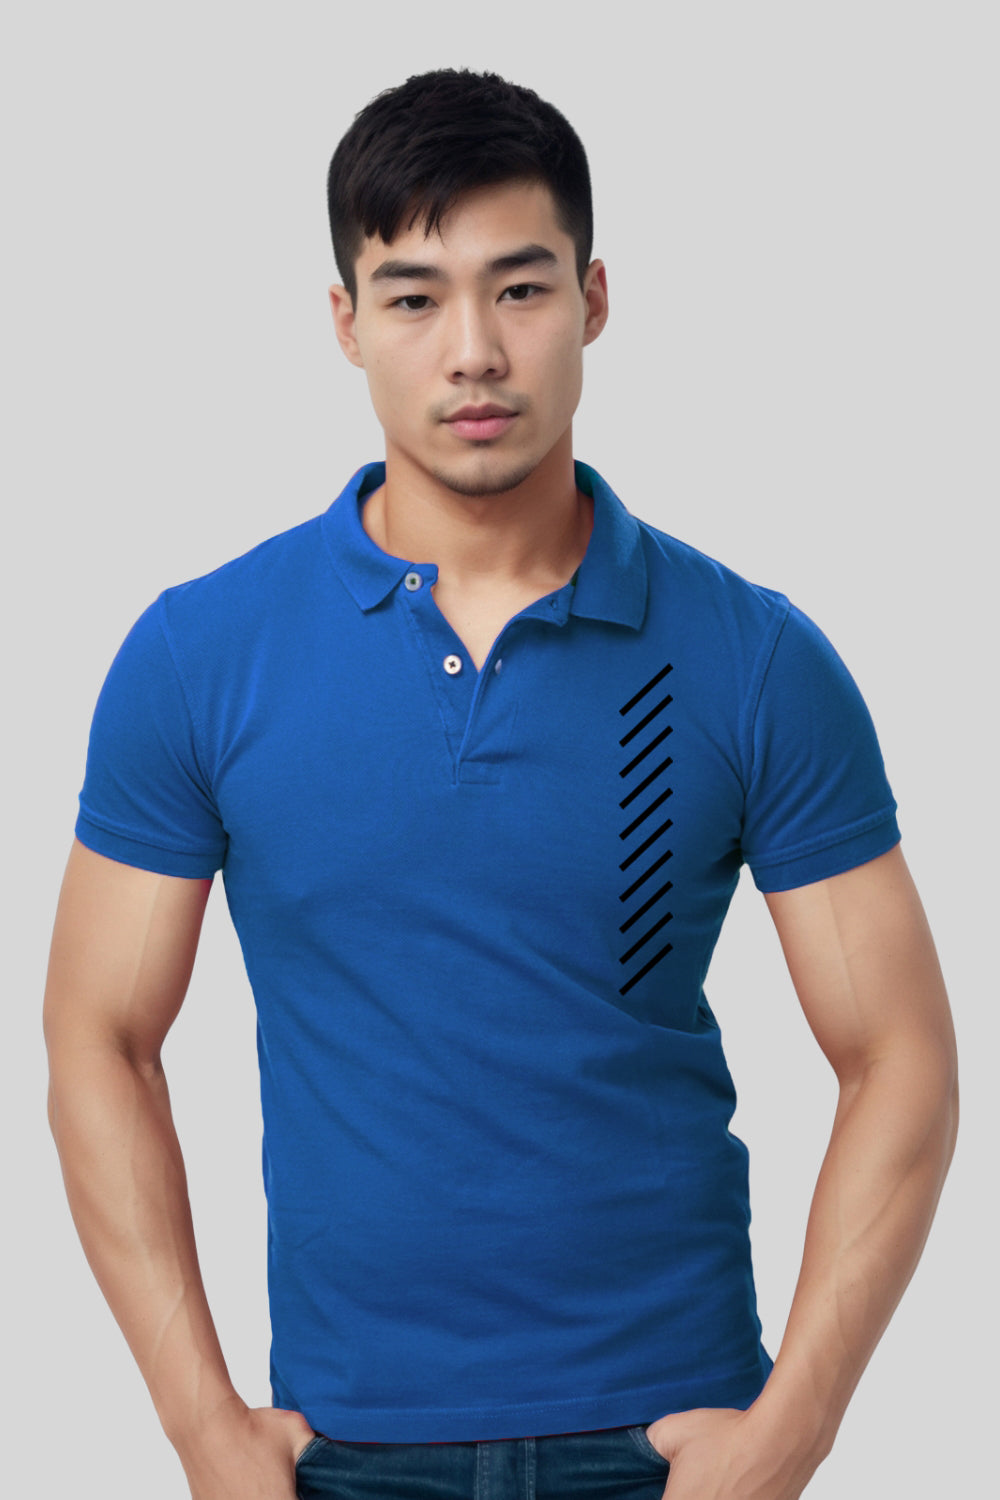 Vertical Line Pocket Printed Blue Polo Tshirt